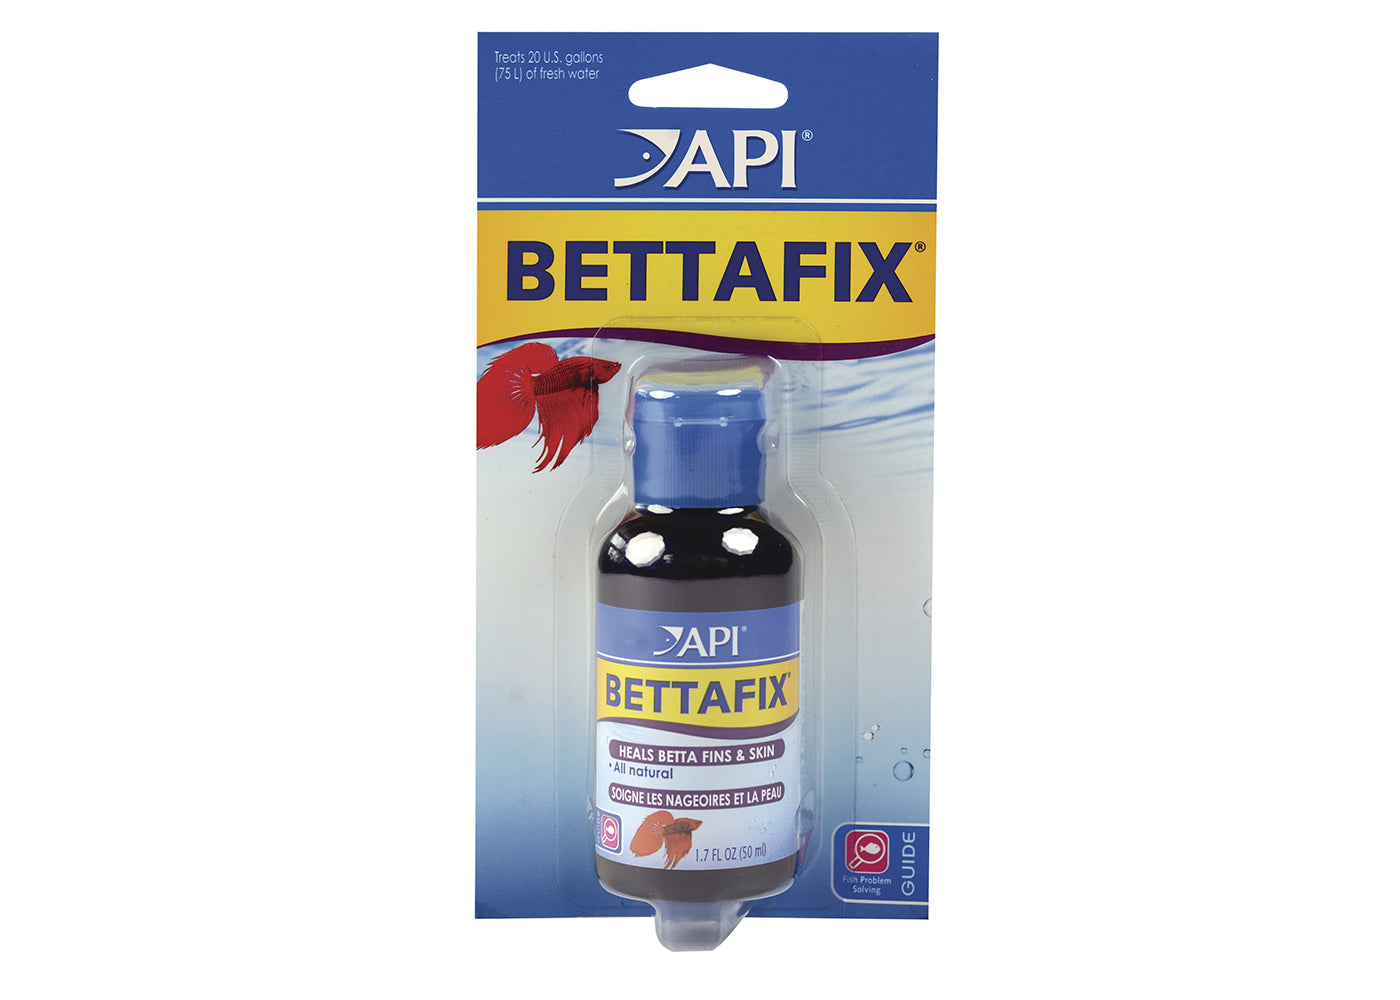 API bettafix bottle, API, aquarium water conditioning